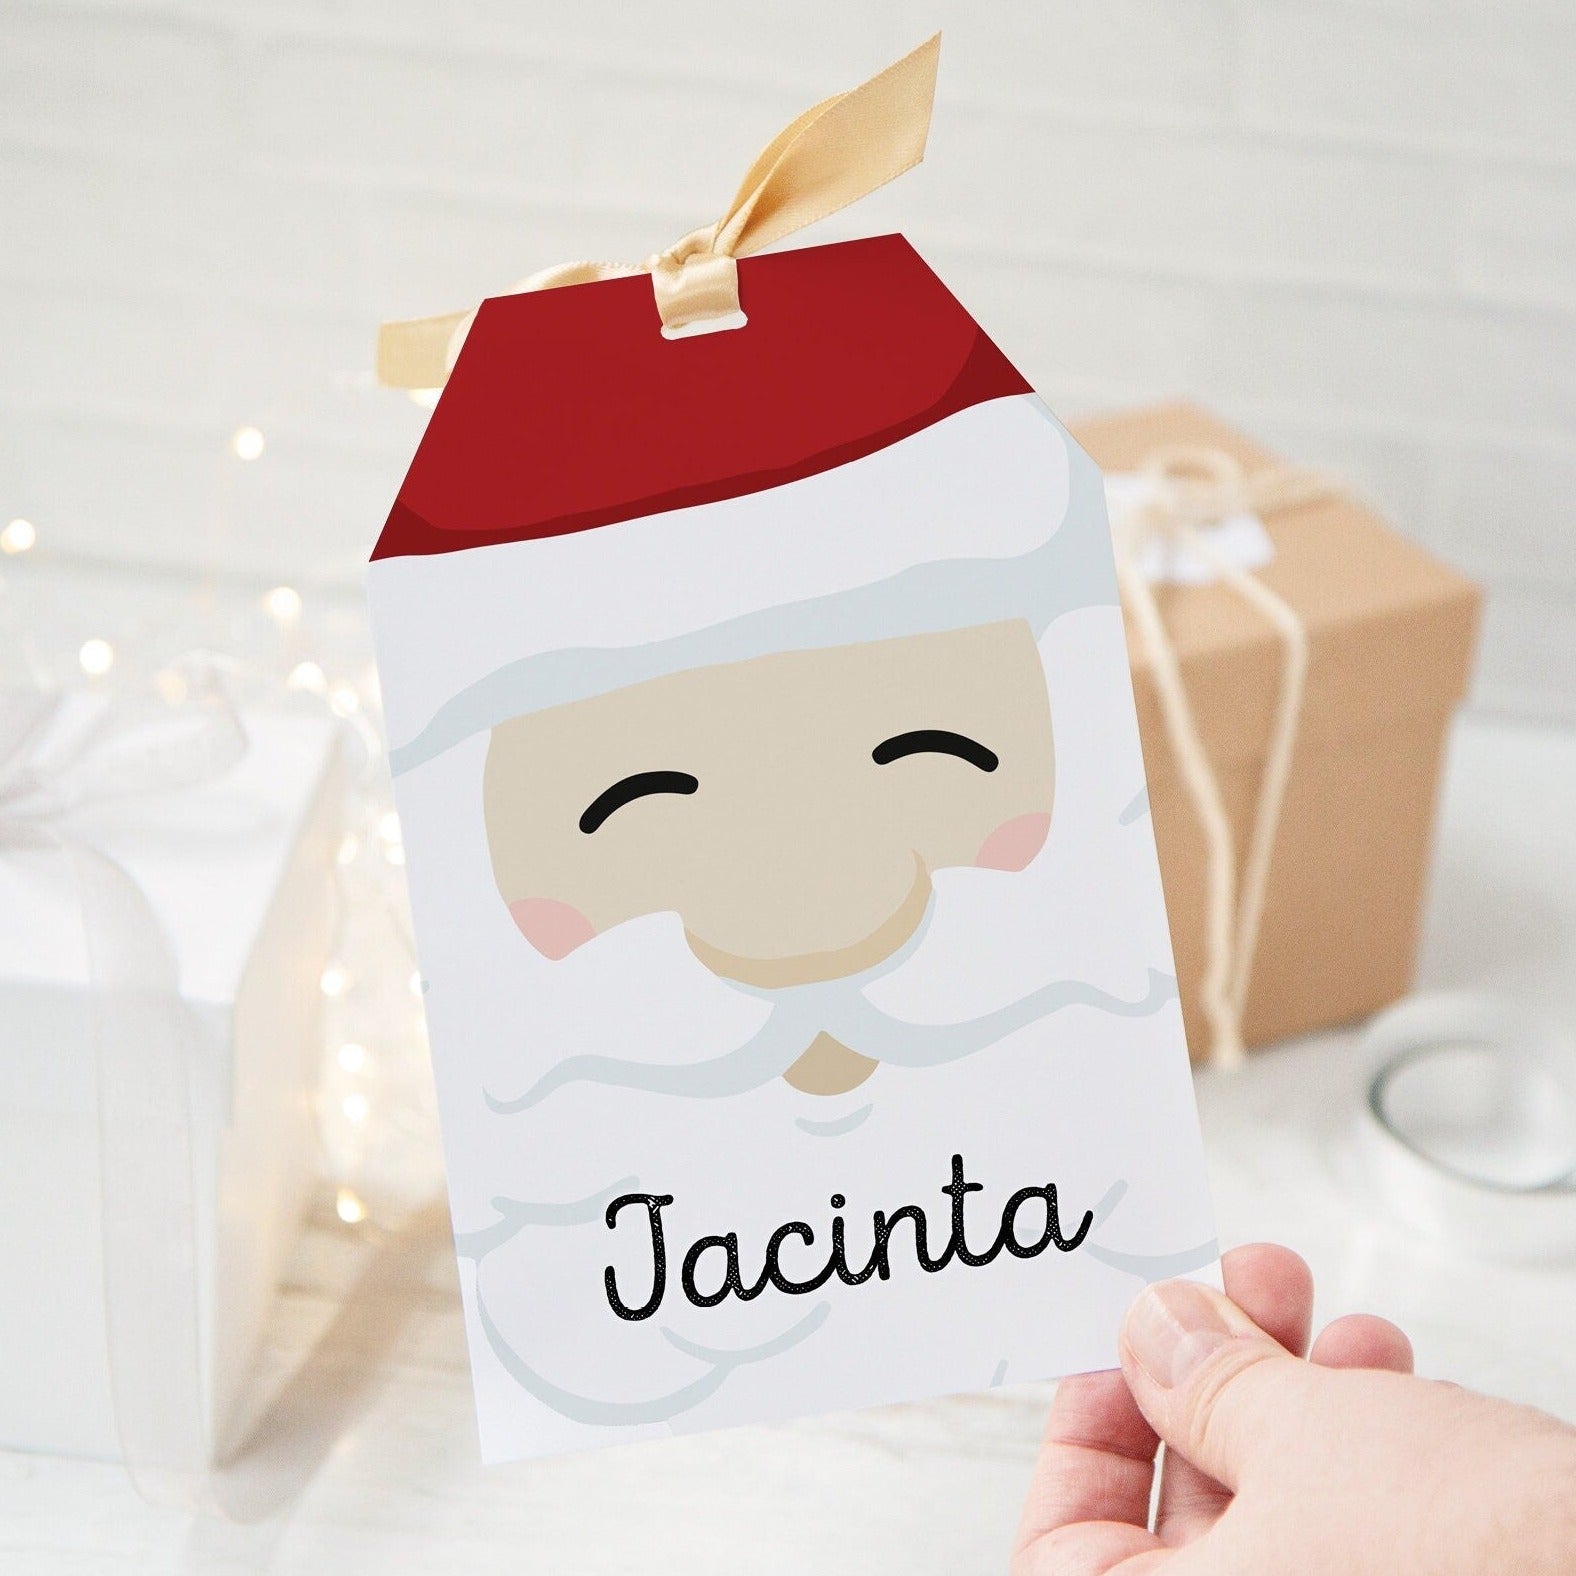 180 Cute Free Printable Christmas Gift Tags